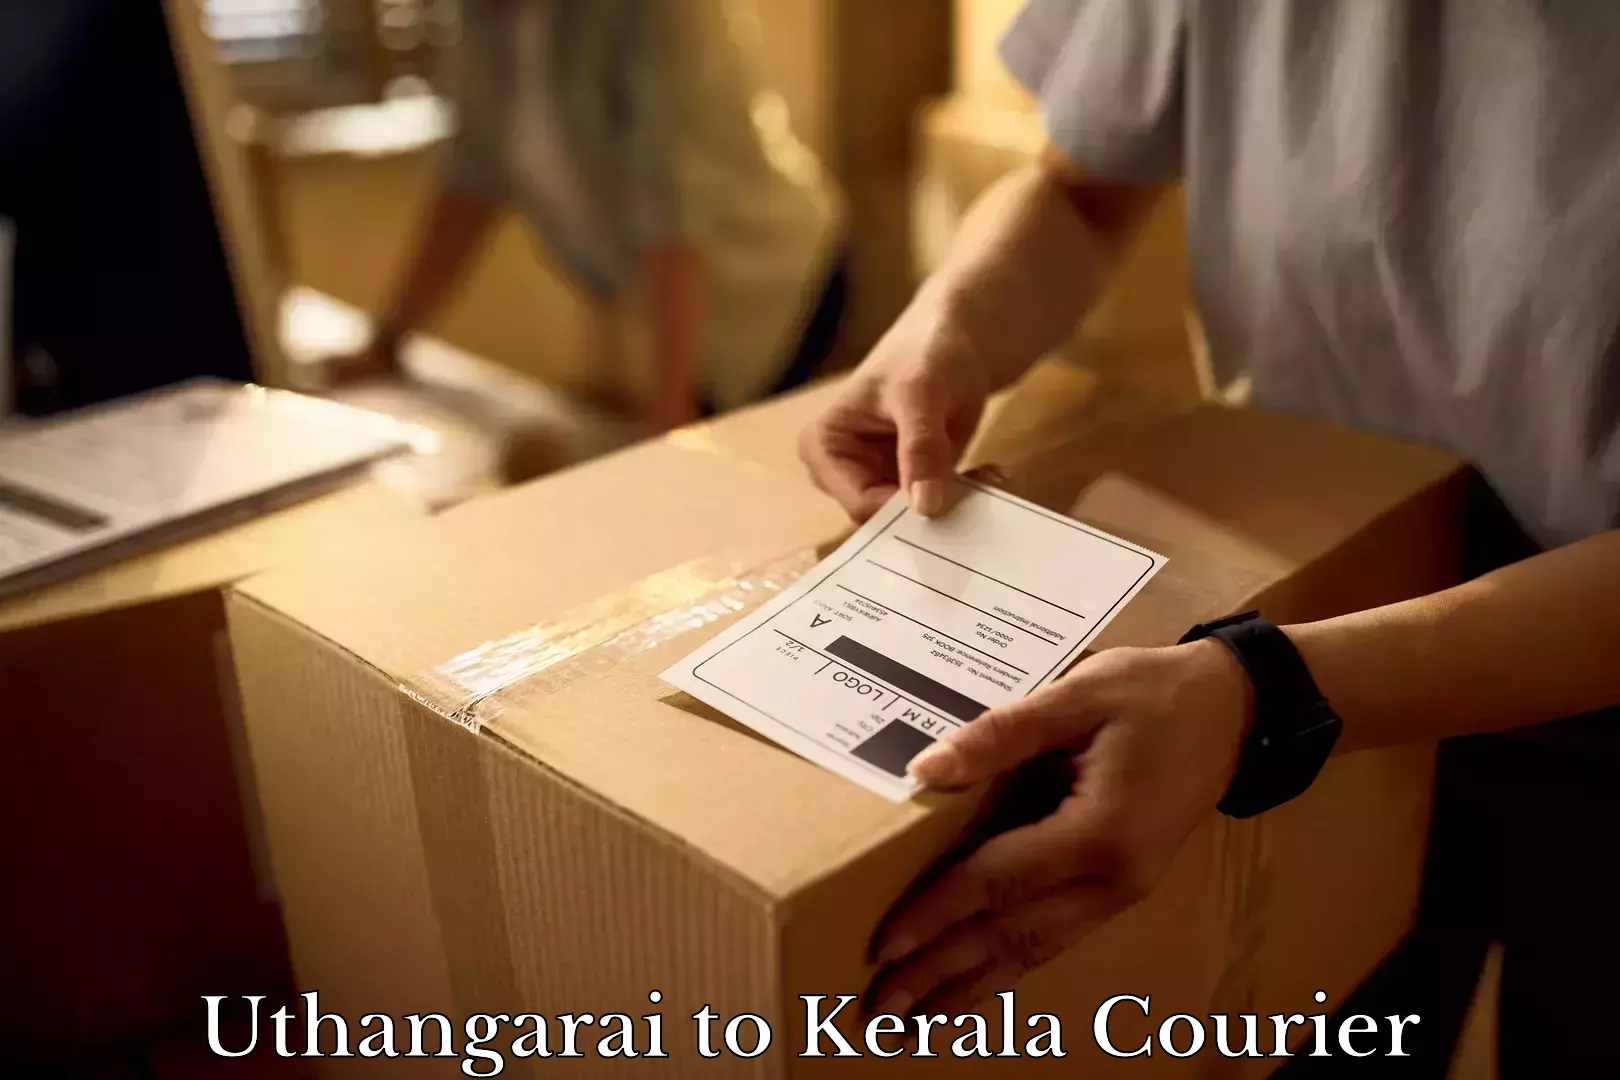 Furniture transport company Uthangarai to Kerala